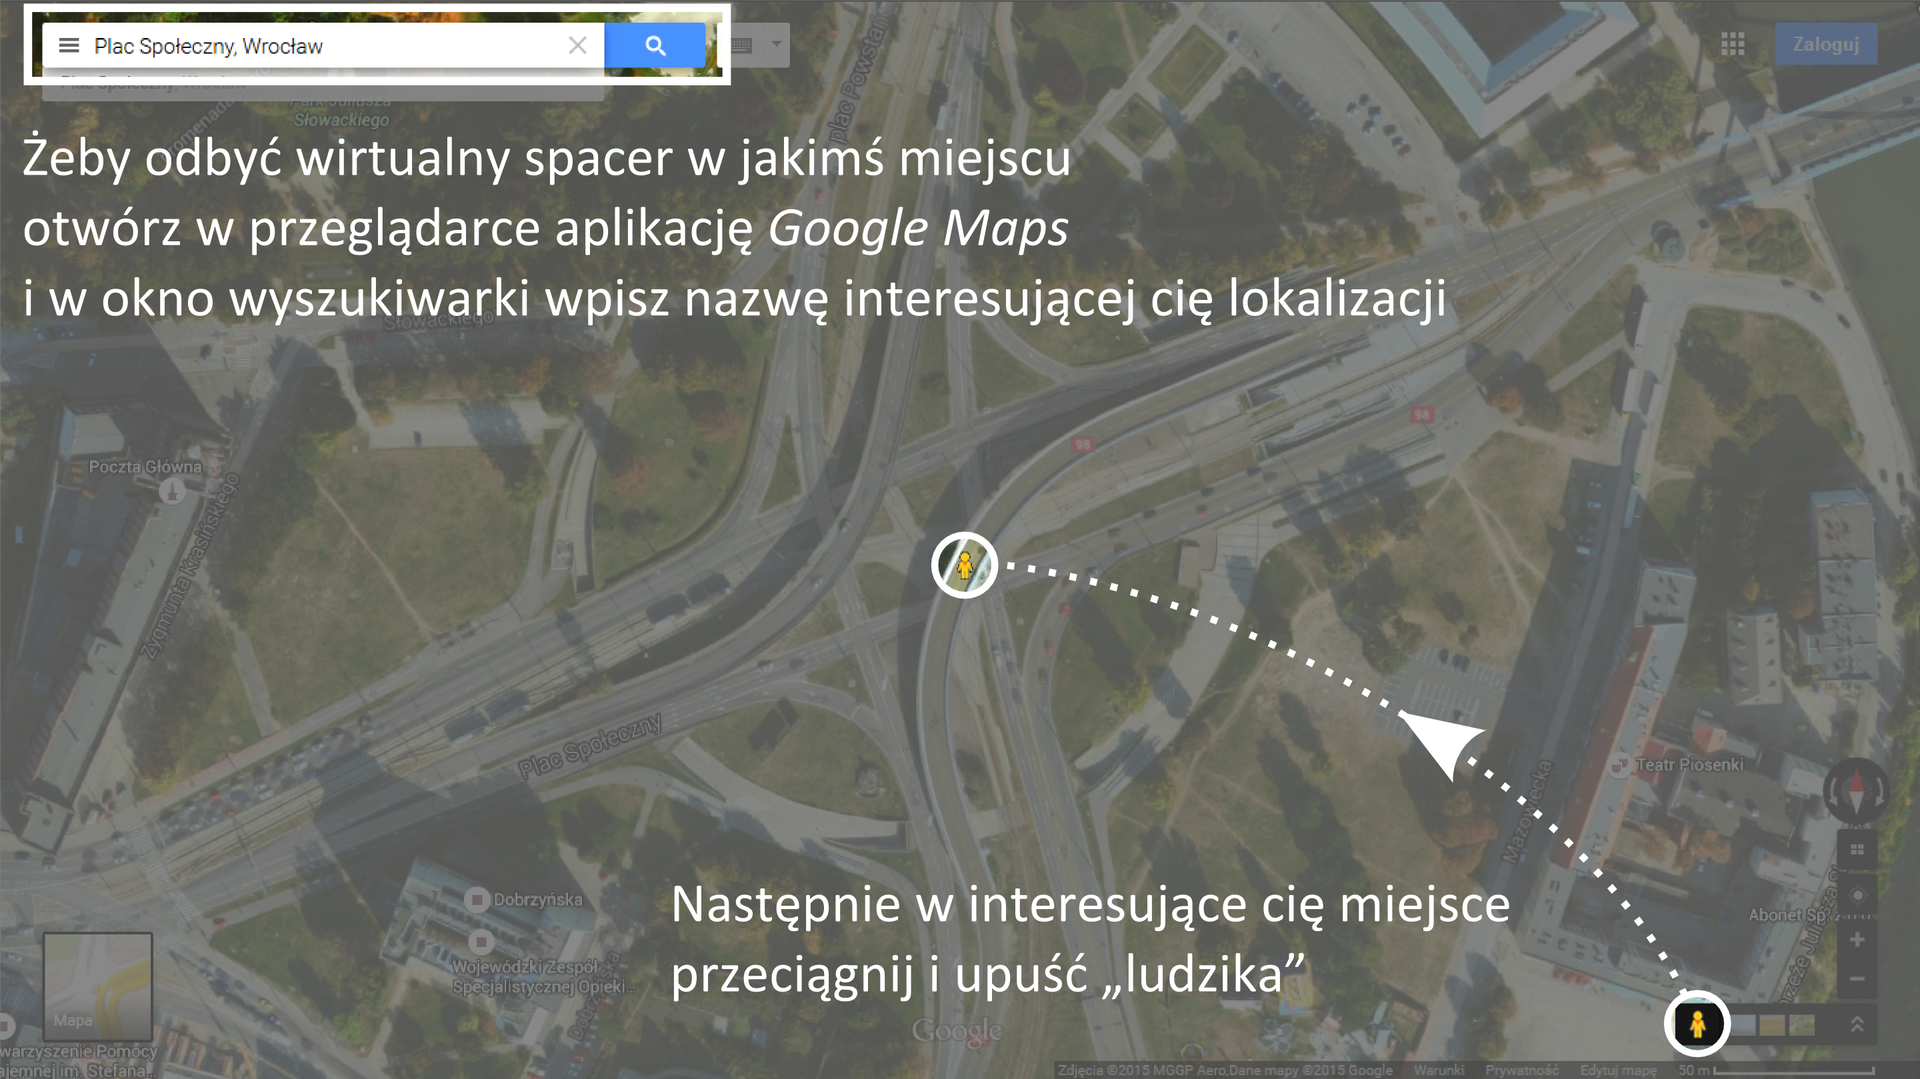 Galeria składa się z dwóch ilustracji.Pierwsza ilustracja przedstawia sposób korzystania z aplikacji internetowej Google Street View.